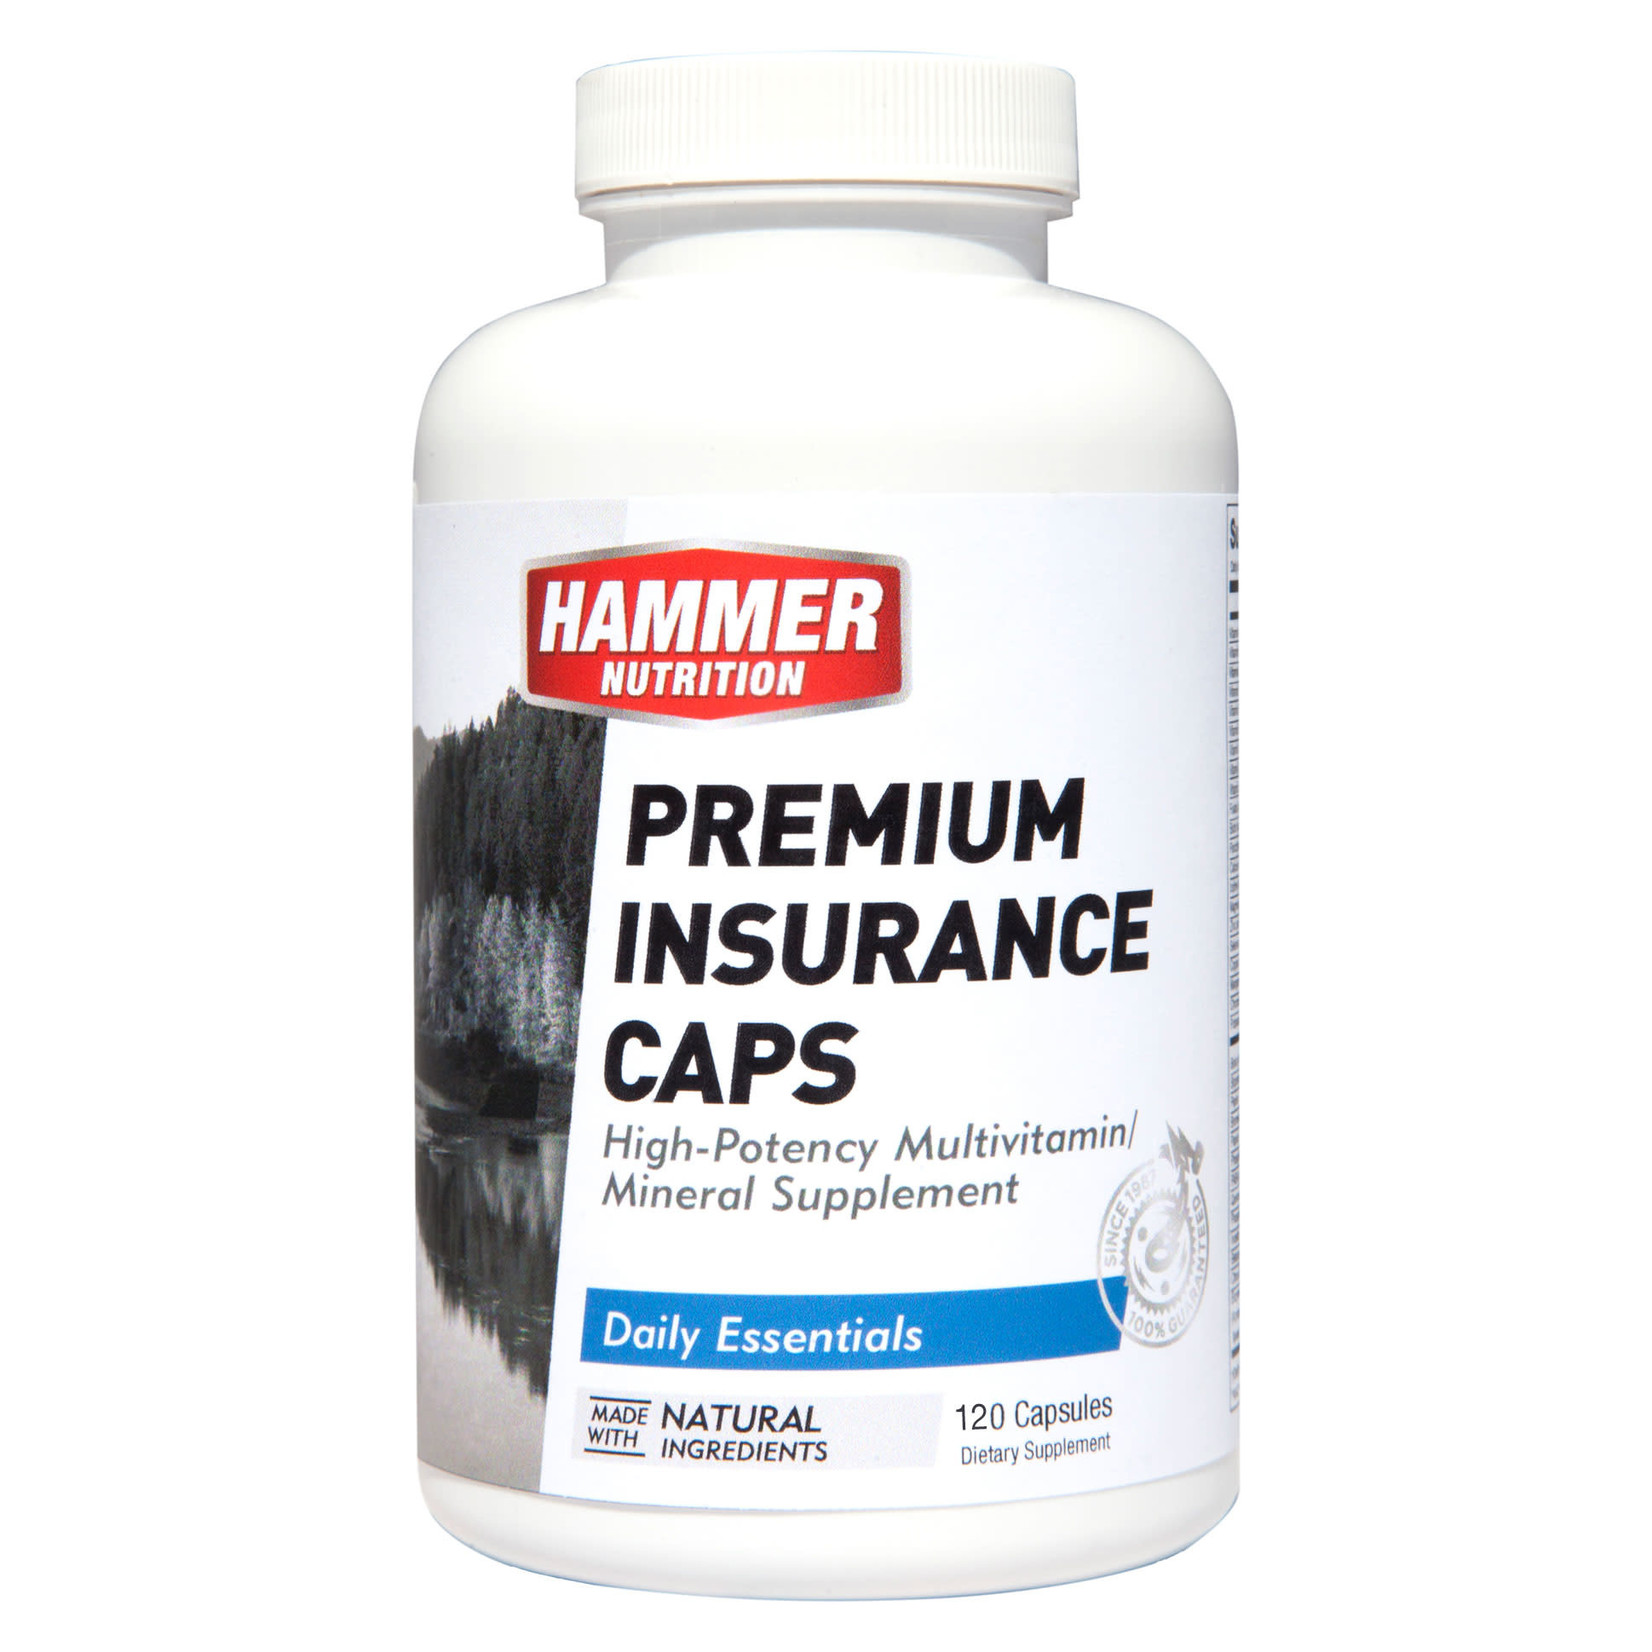 Hammer Premium Insurance Caps (120 Capsules)